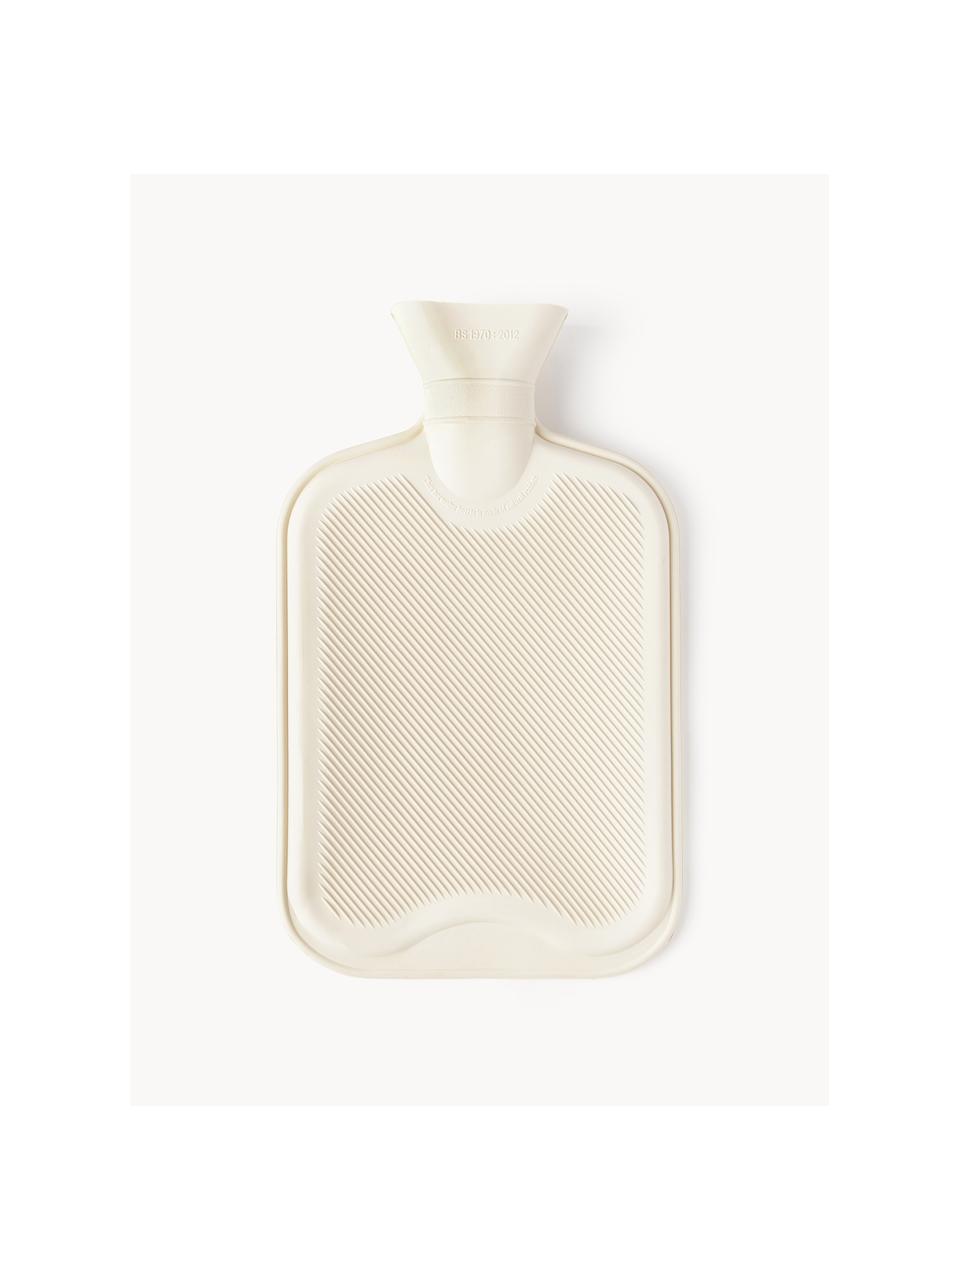 Bouillotte Rubber Bottle, 100 % caoutchouc, Blanc cassé, larg. 20 x long. 32 cm